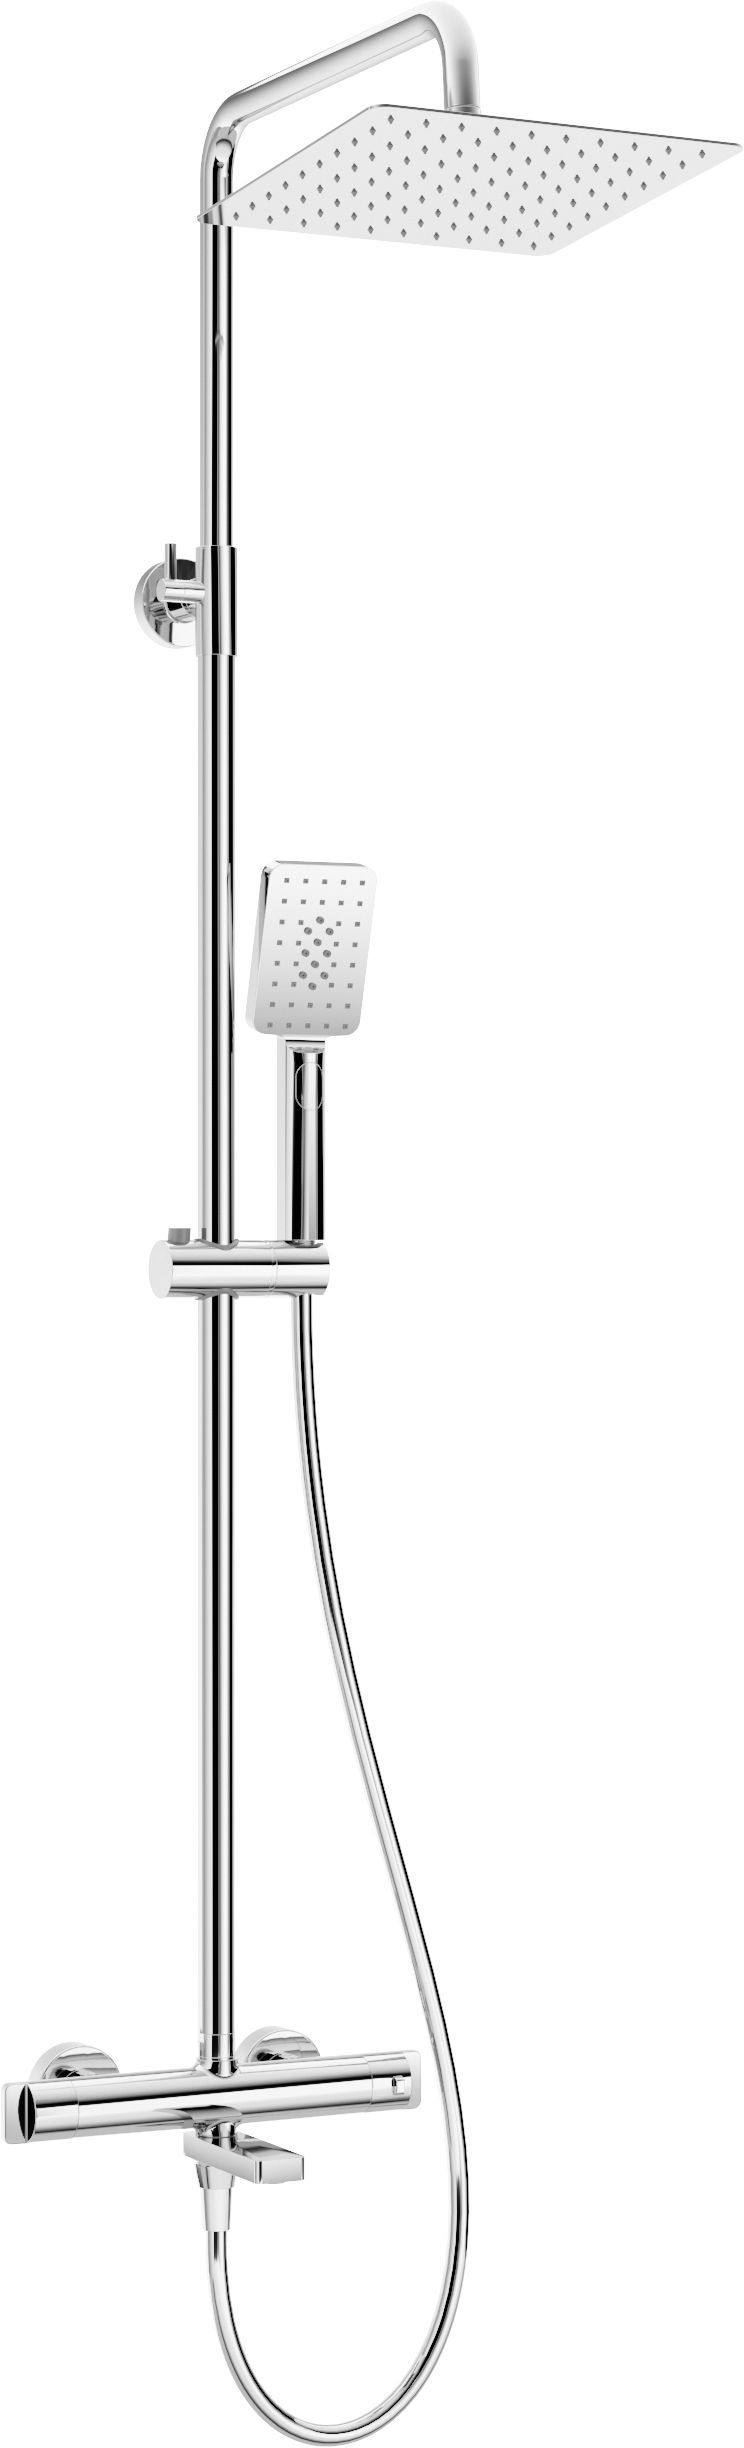 Deszczownica z baterią wannową termostatyczną - NAC_01HT - Główne zdjęcie produktowe